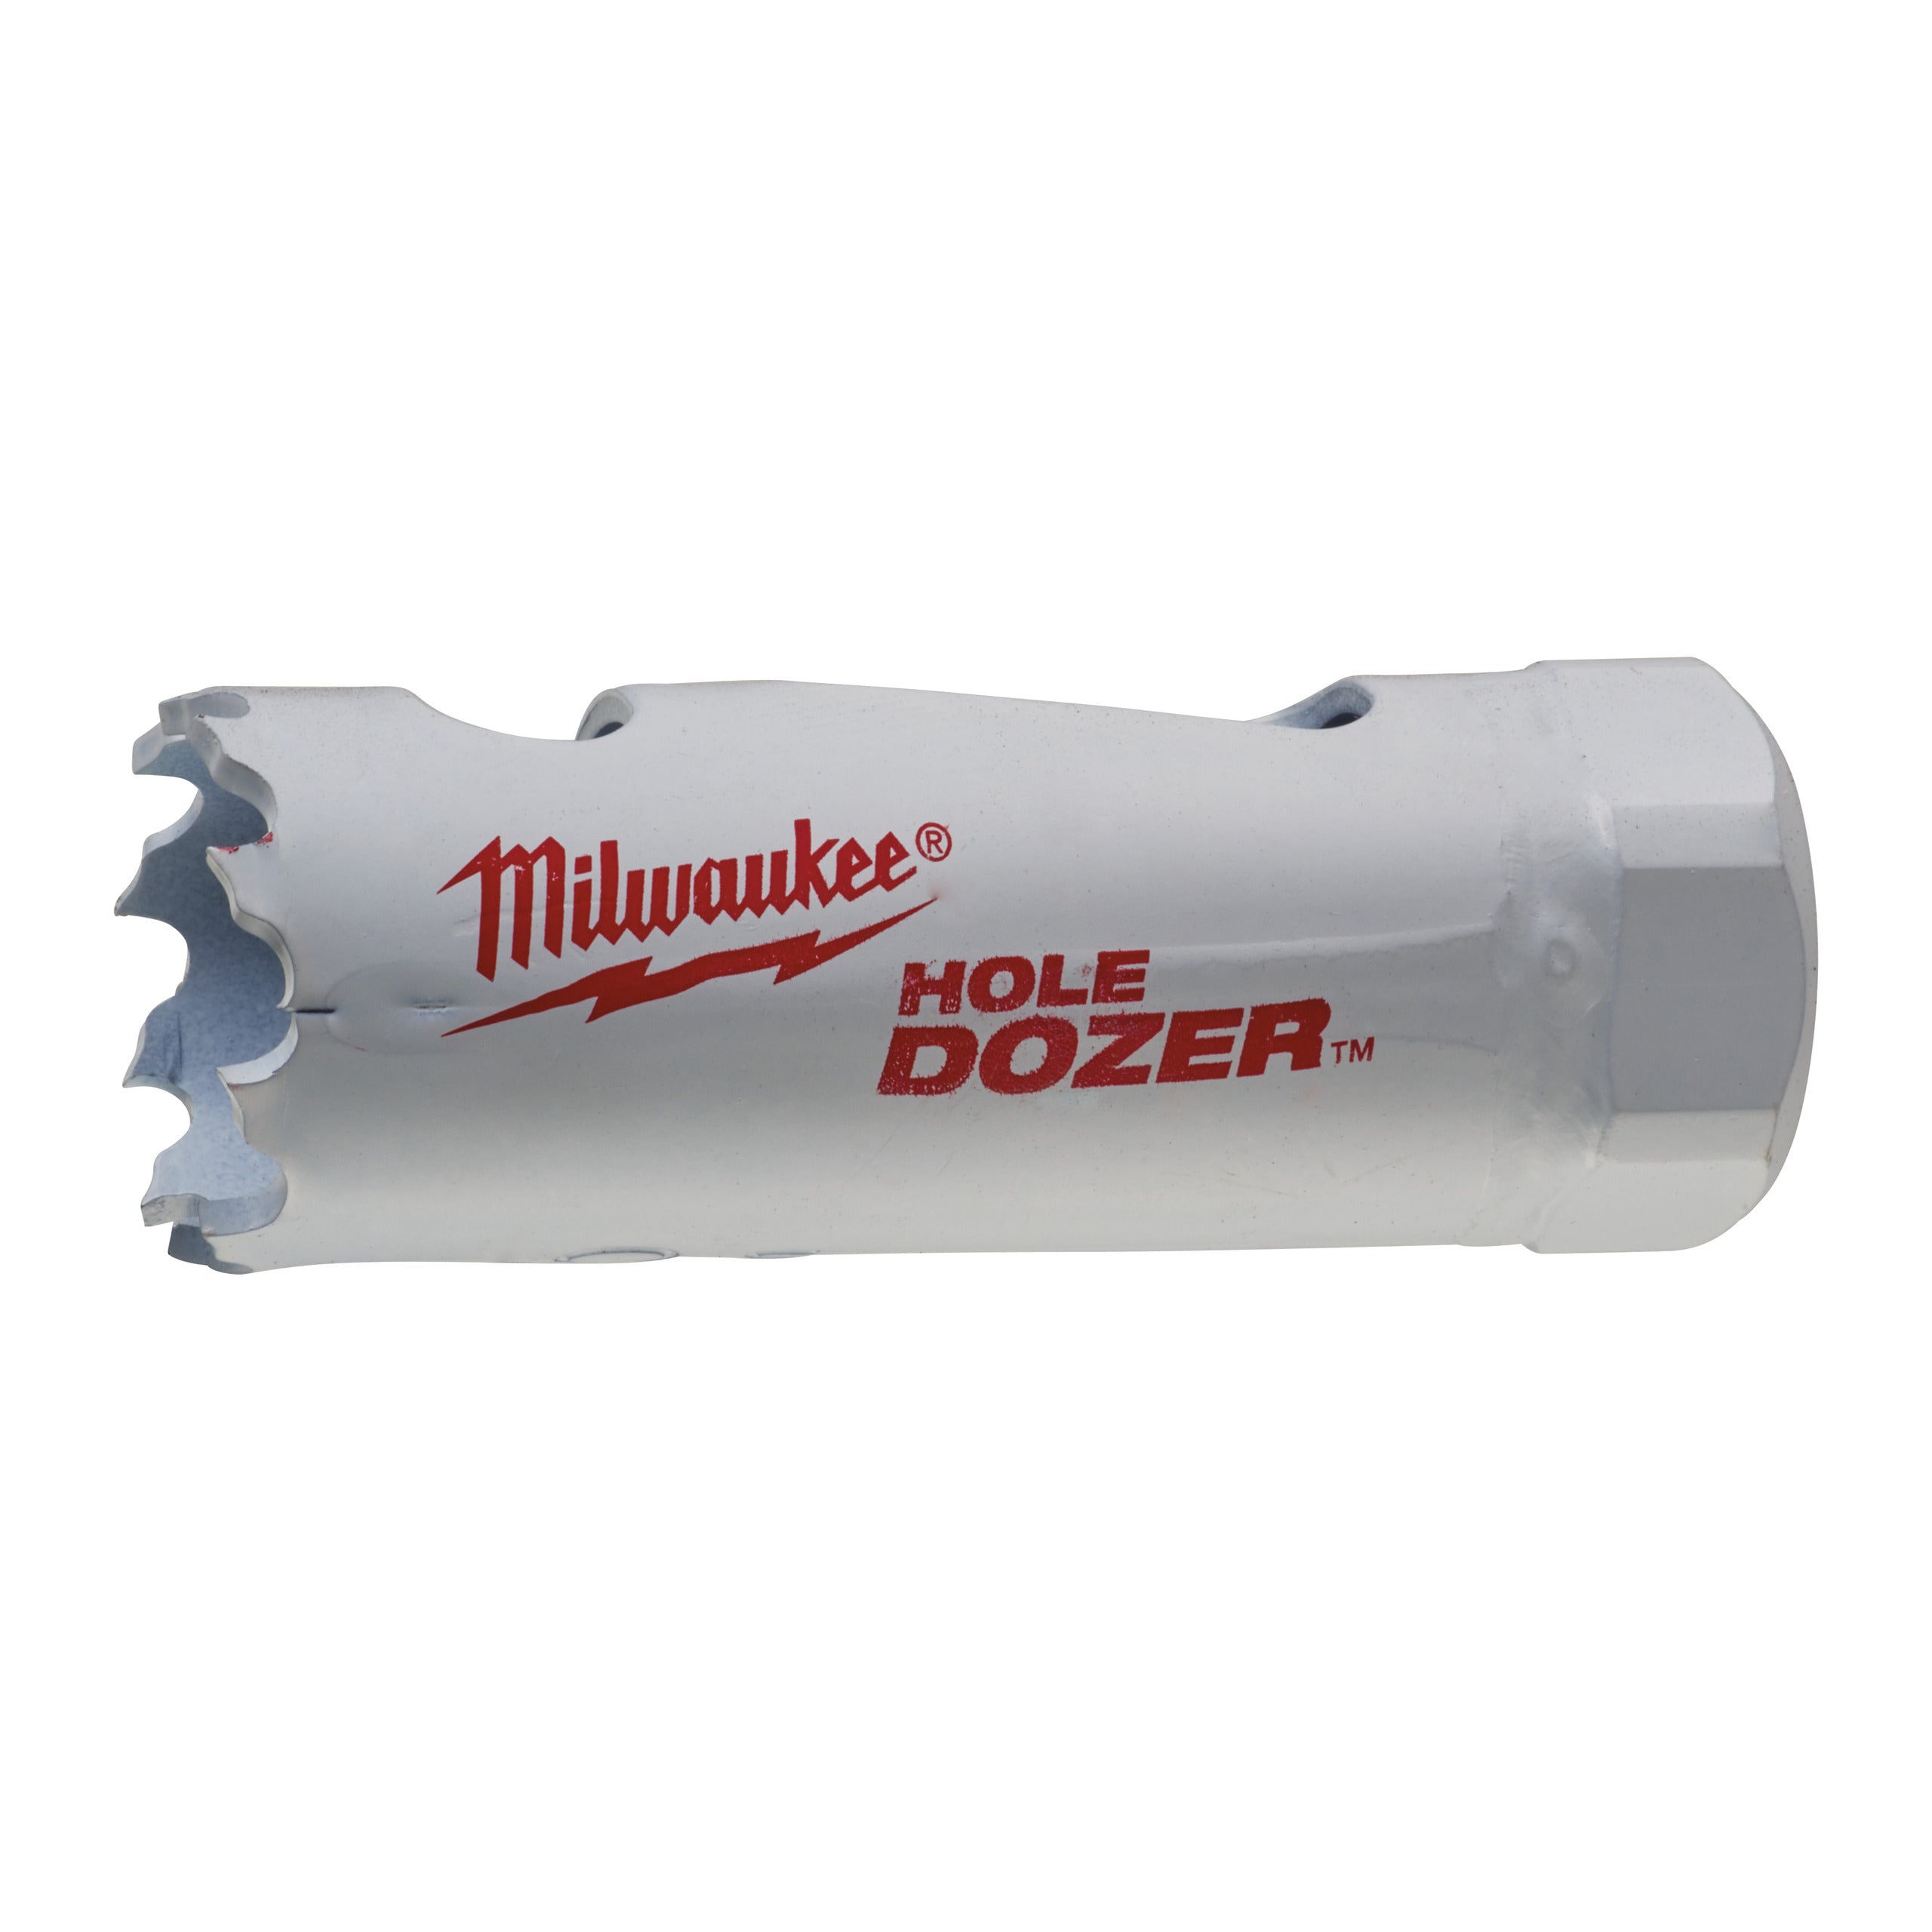 Carotă Milwaukee HOLE DOZER™ bi-metal Ø21 mm 49560027